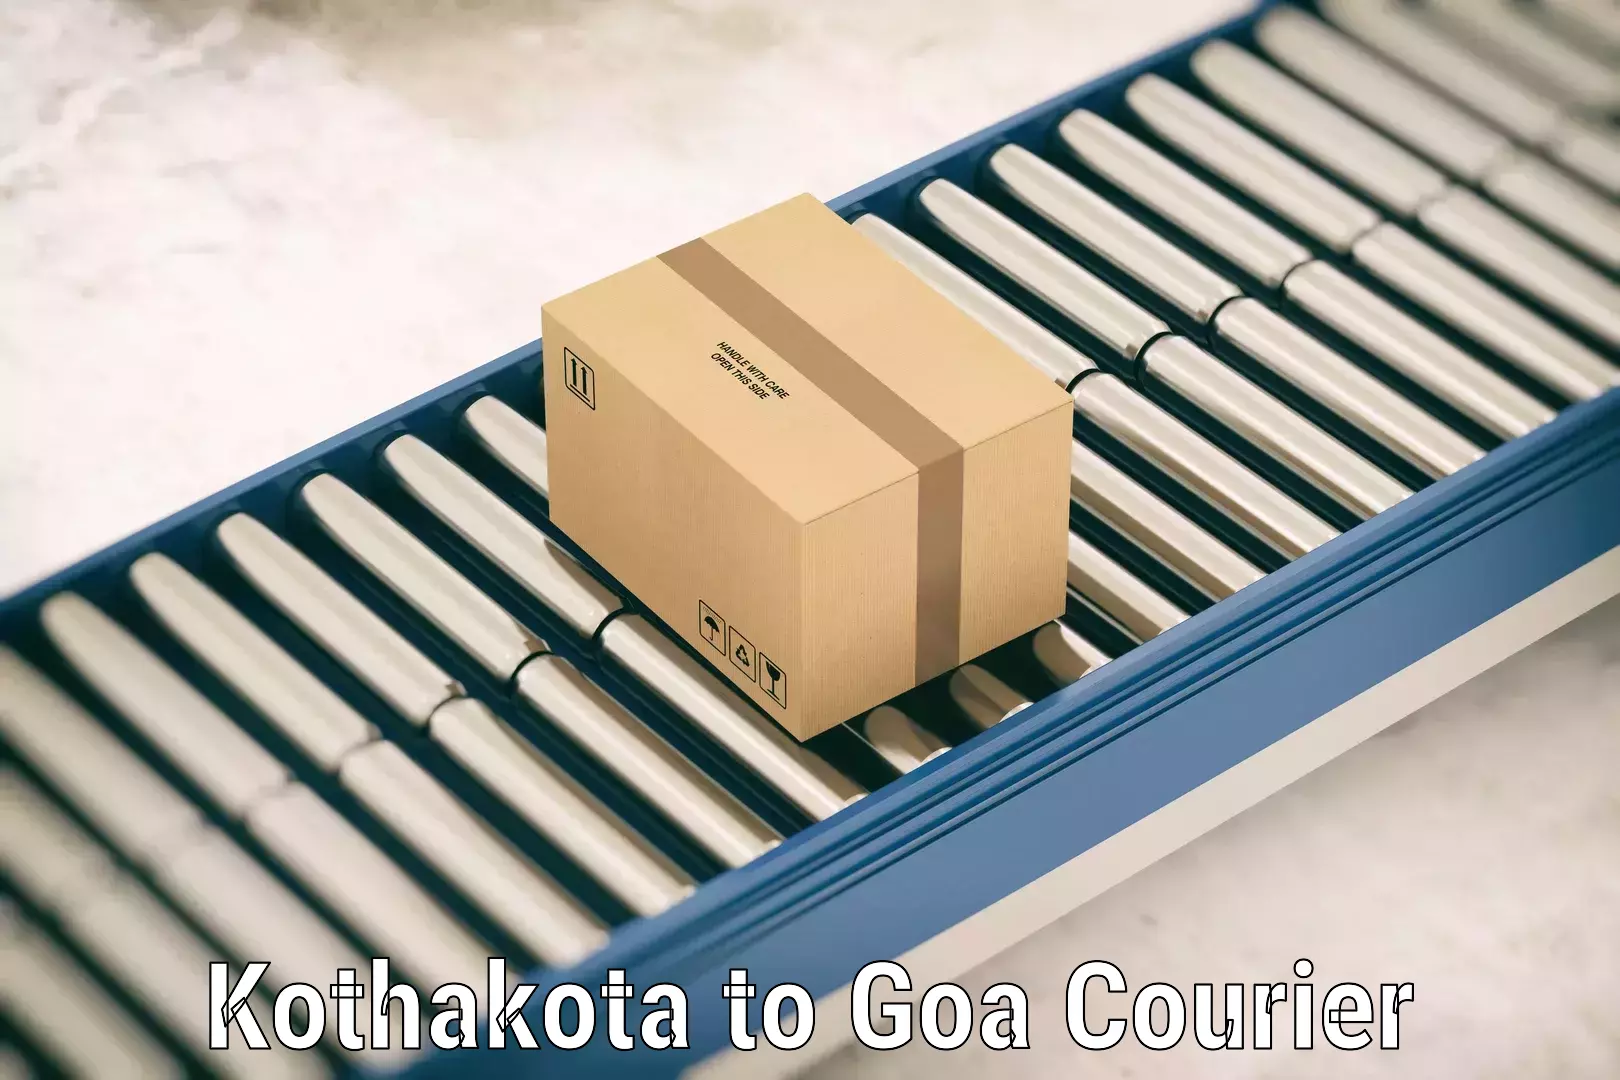 Luggage shipment strategy Kothakota to Goa